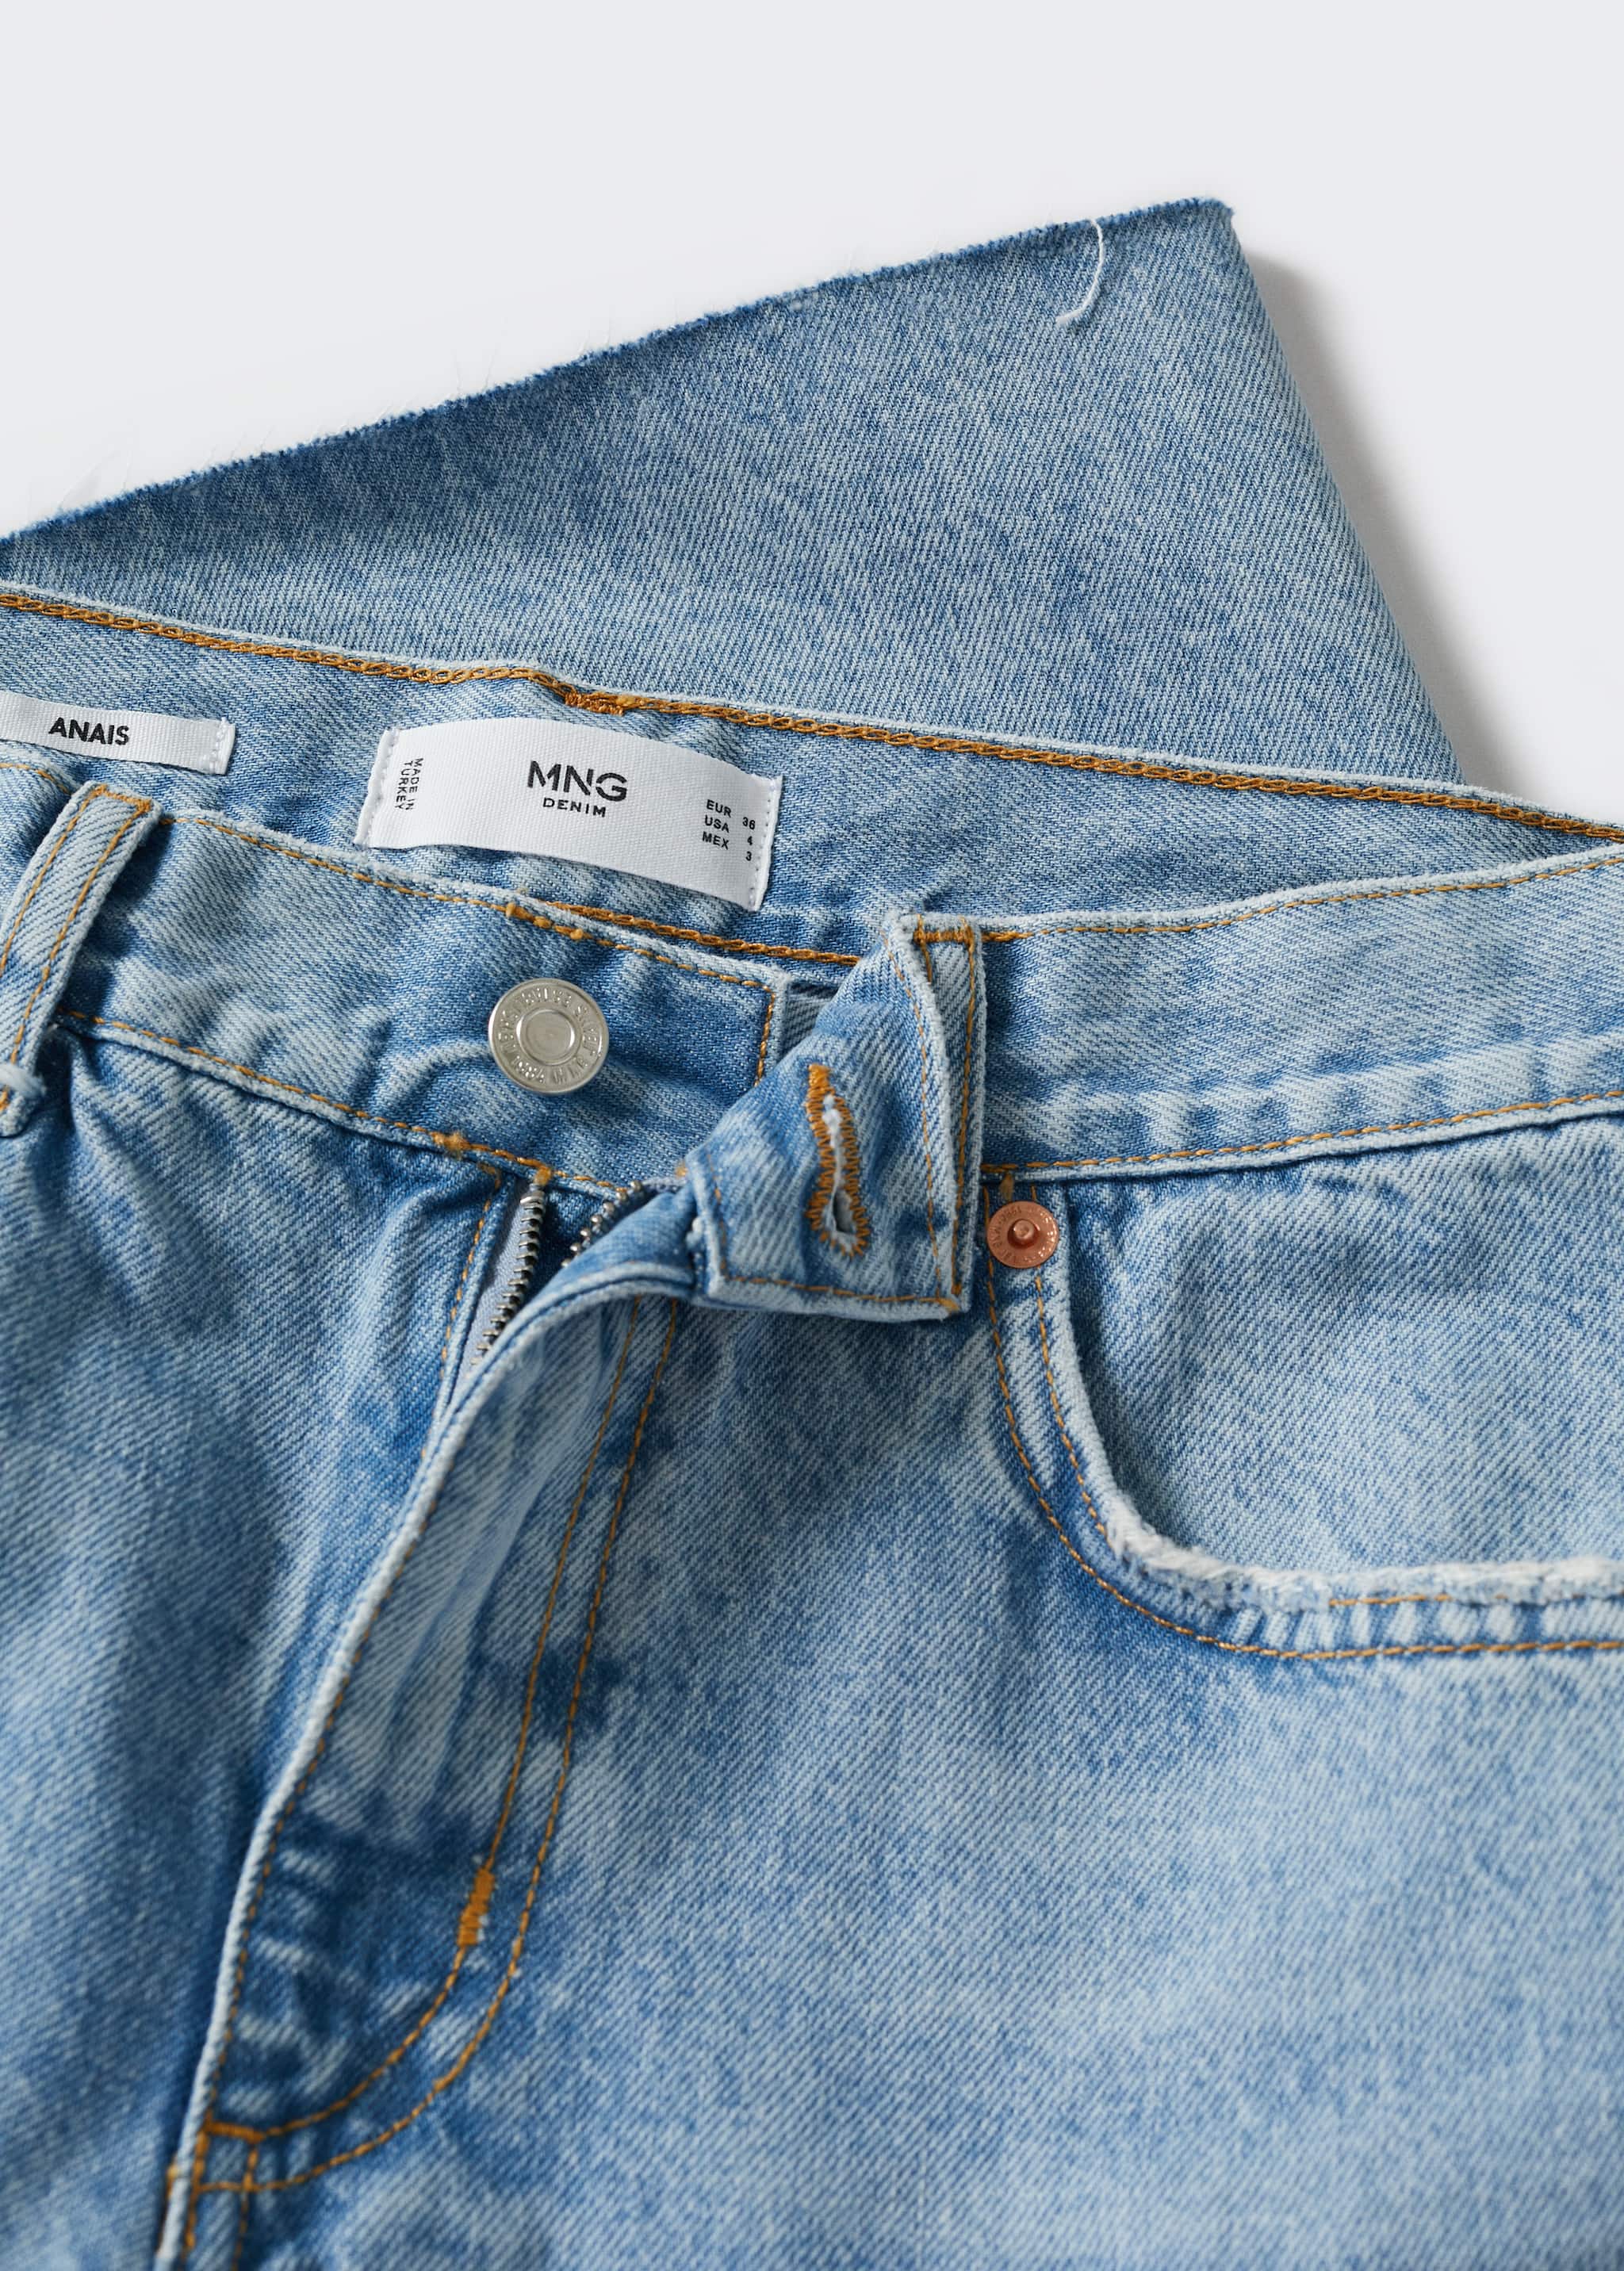 Jeans-Bermudashorts mit ausgefranstem Saum - Detail des Artikels 8